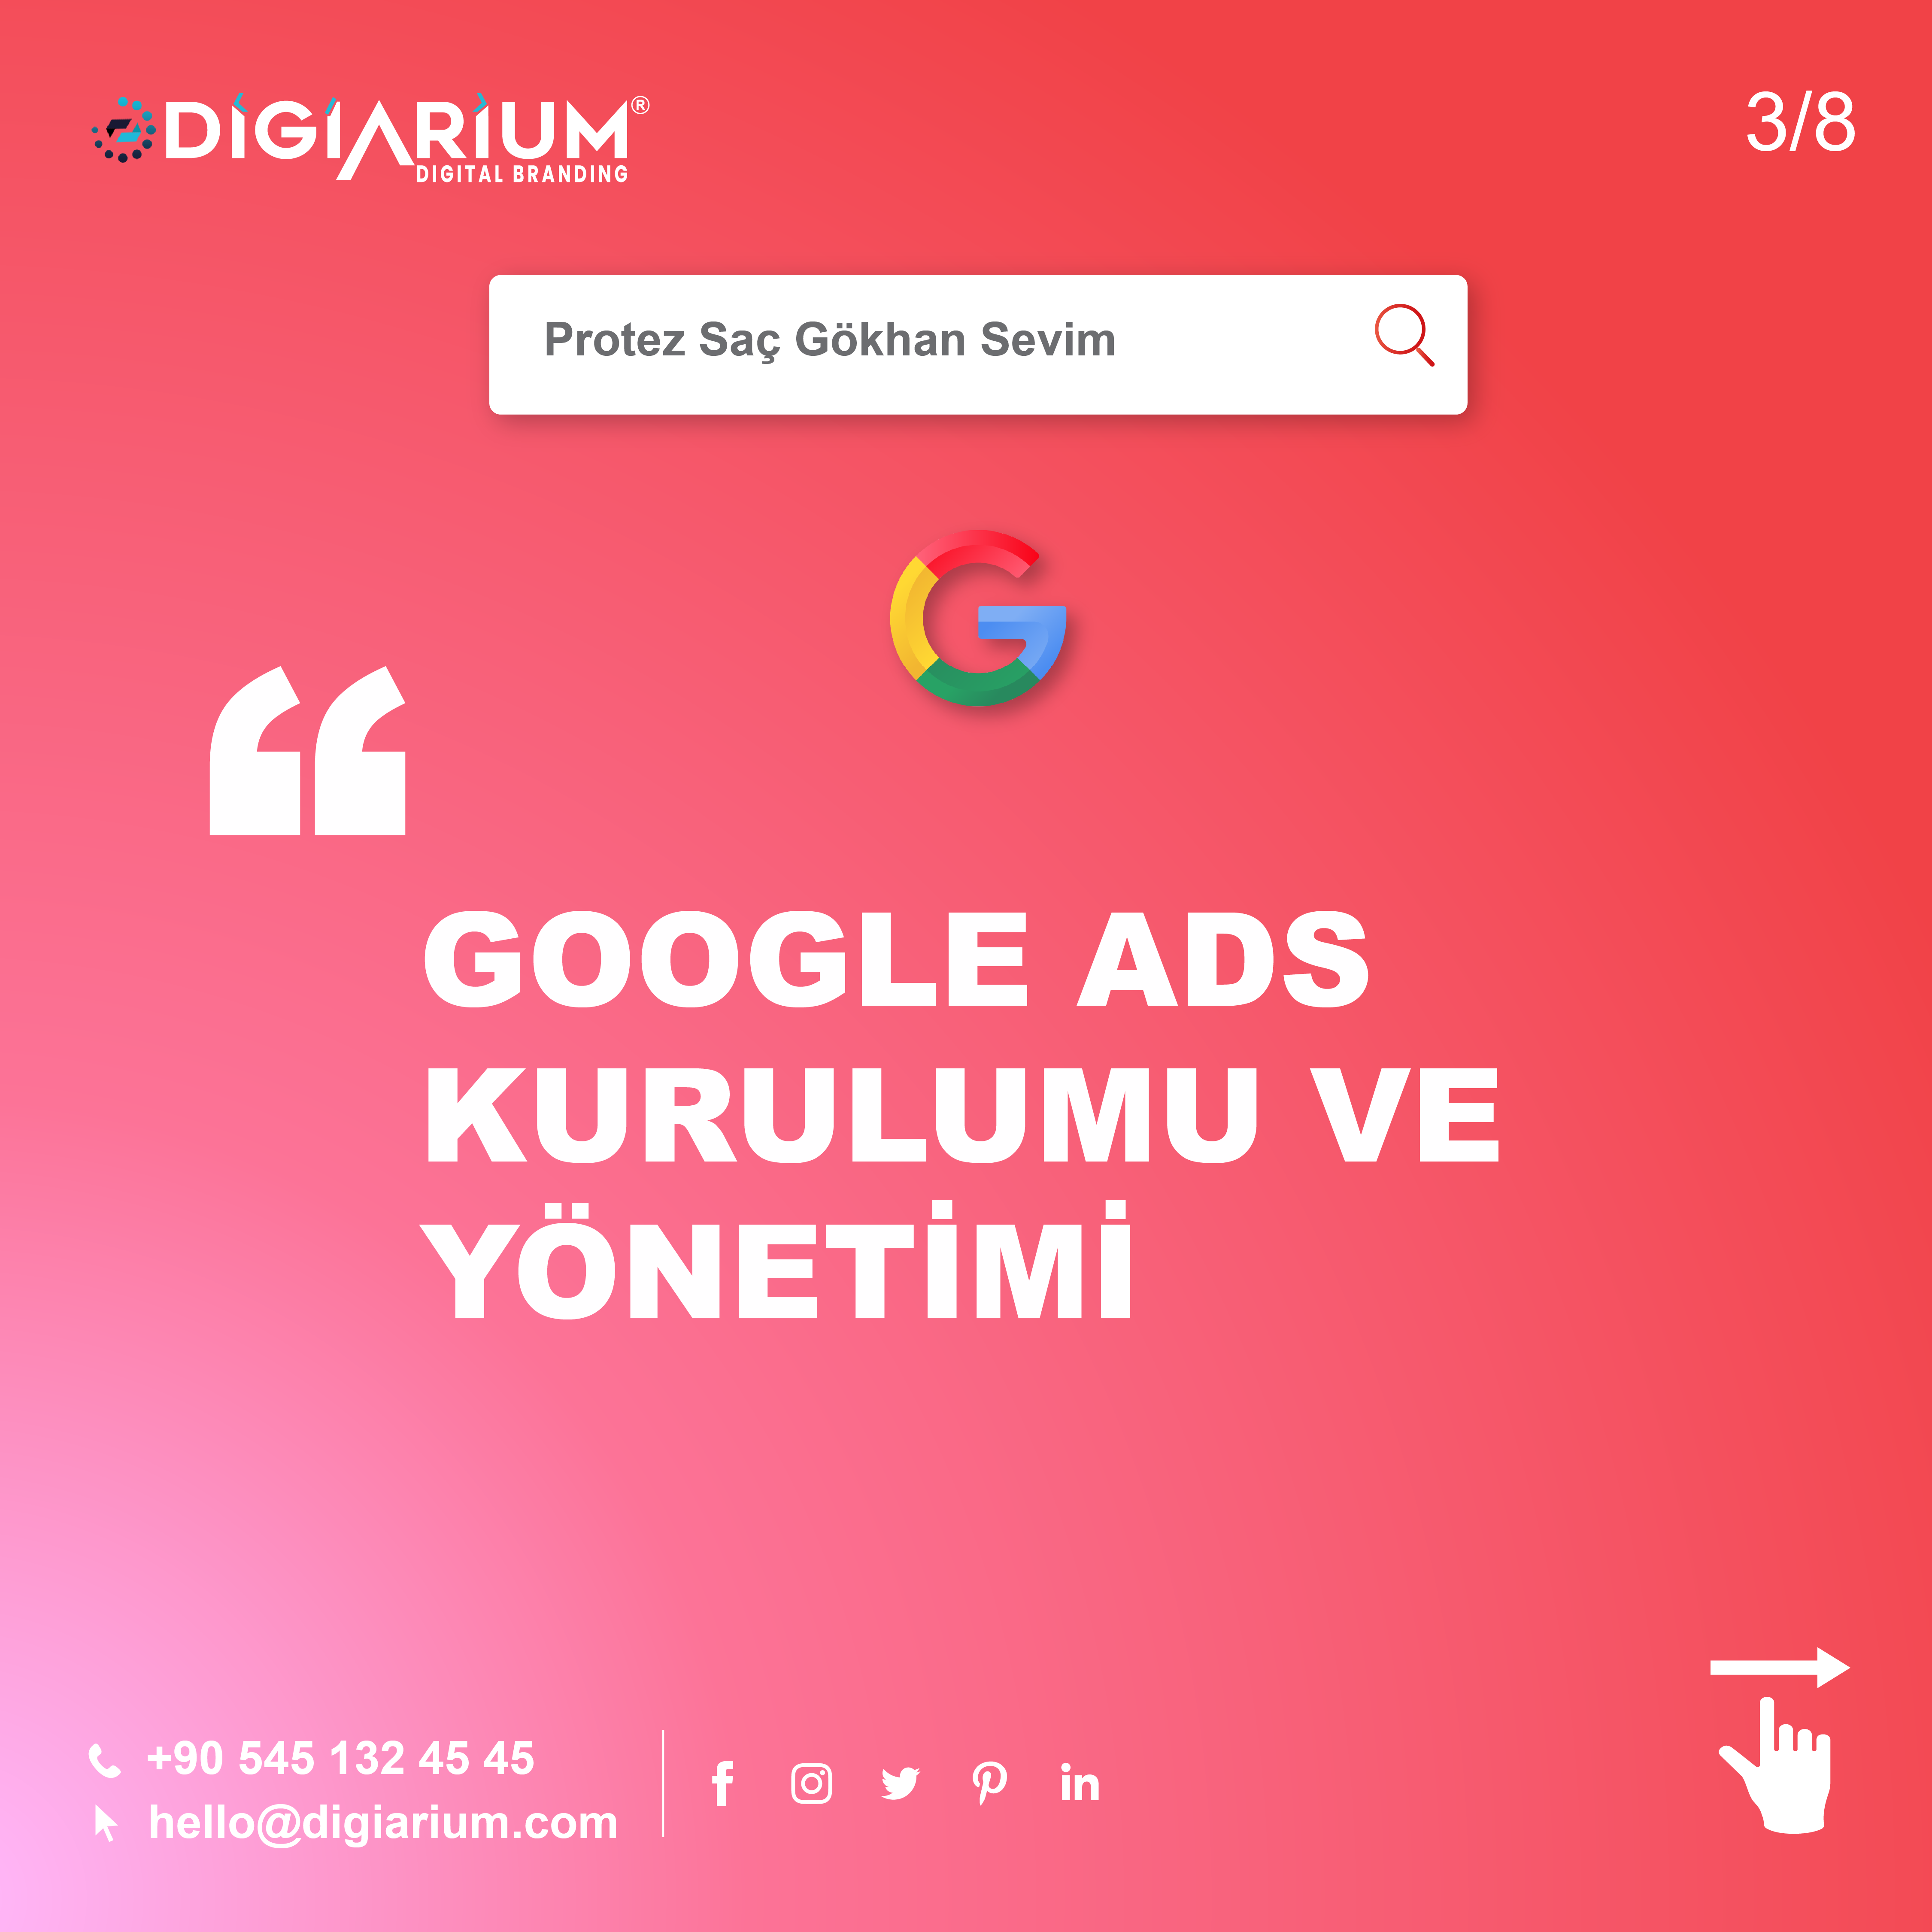 Google ads kurulumu ve yönetimi , google ads reklam yönetimi , google ads reklamları , Google ads kurulumu ve yönetimi